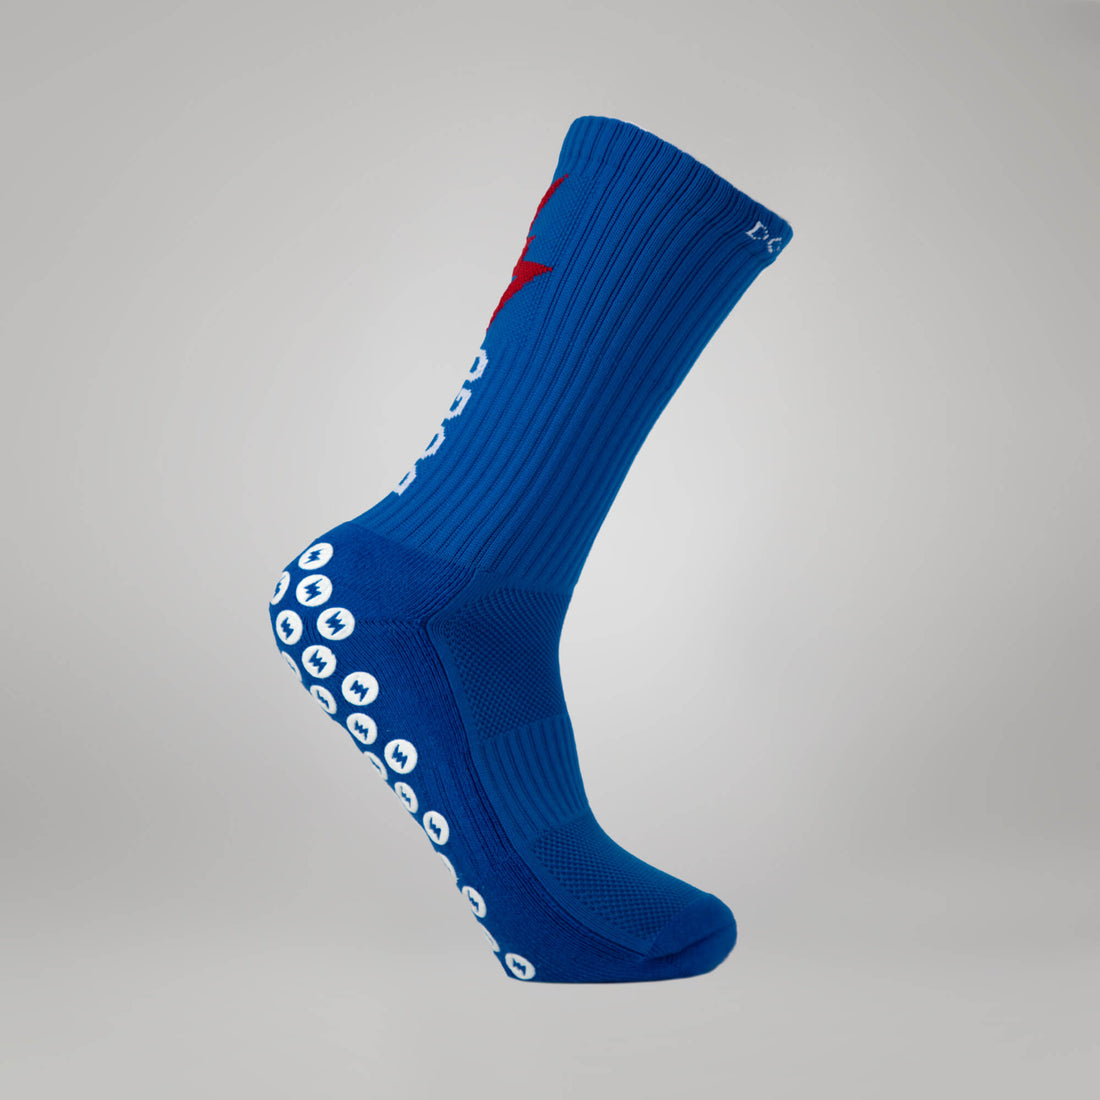 DOGU® - Special Edition Blue Socks